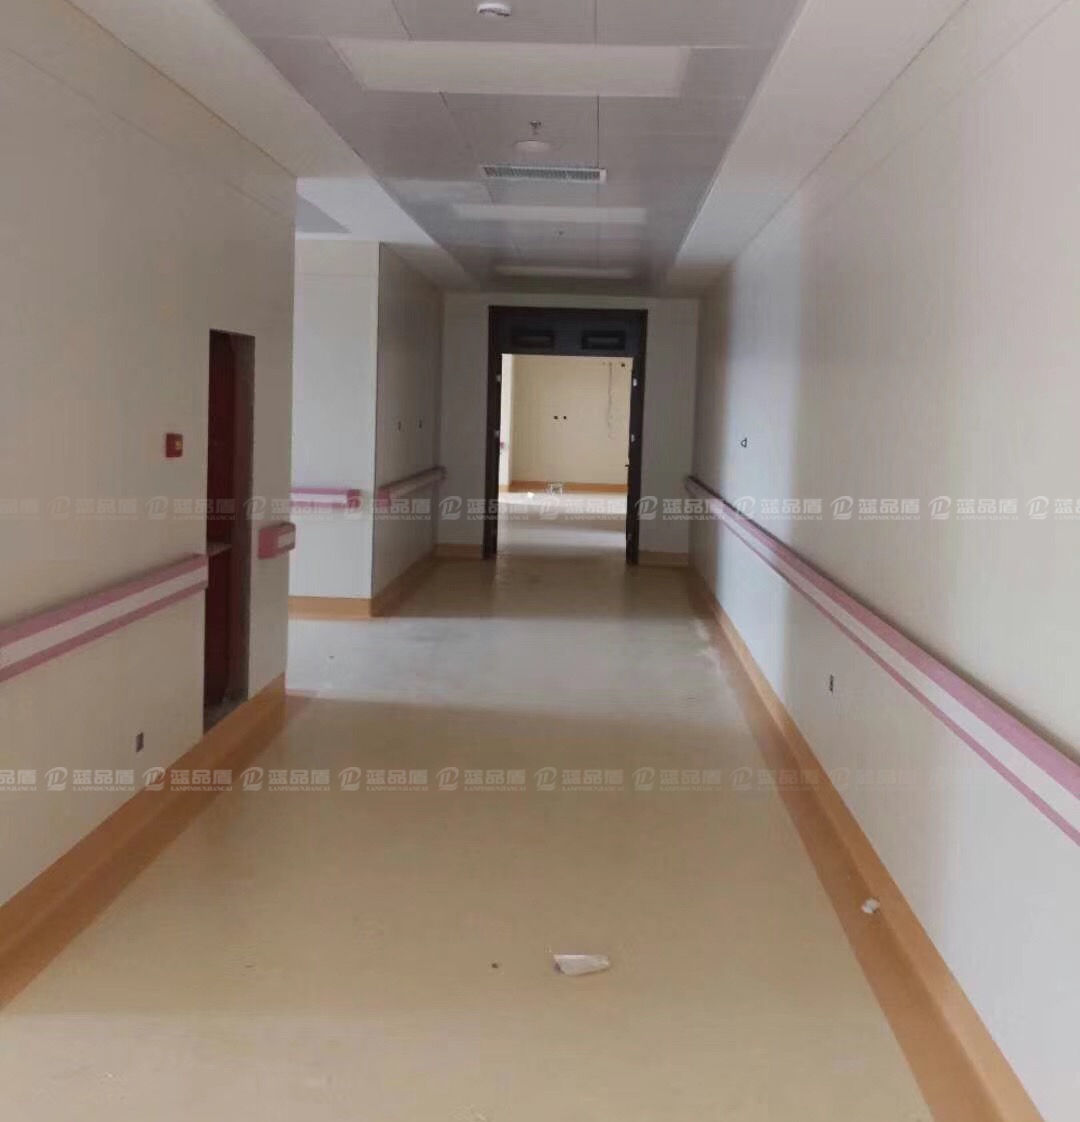 【河北】秦皇岛北戴河区281医院订做粉色的PVC扶手评价很好哦！